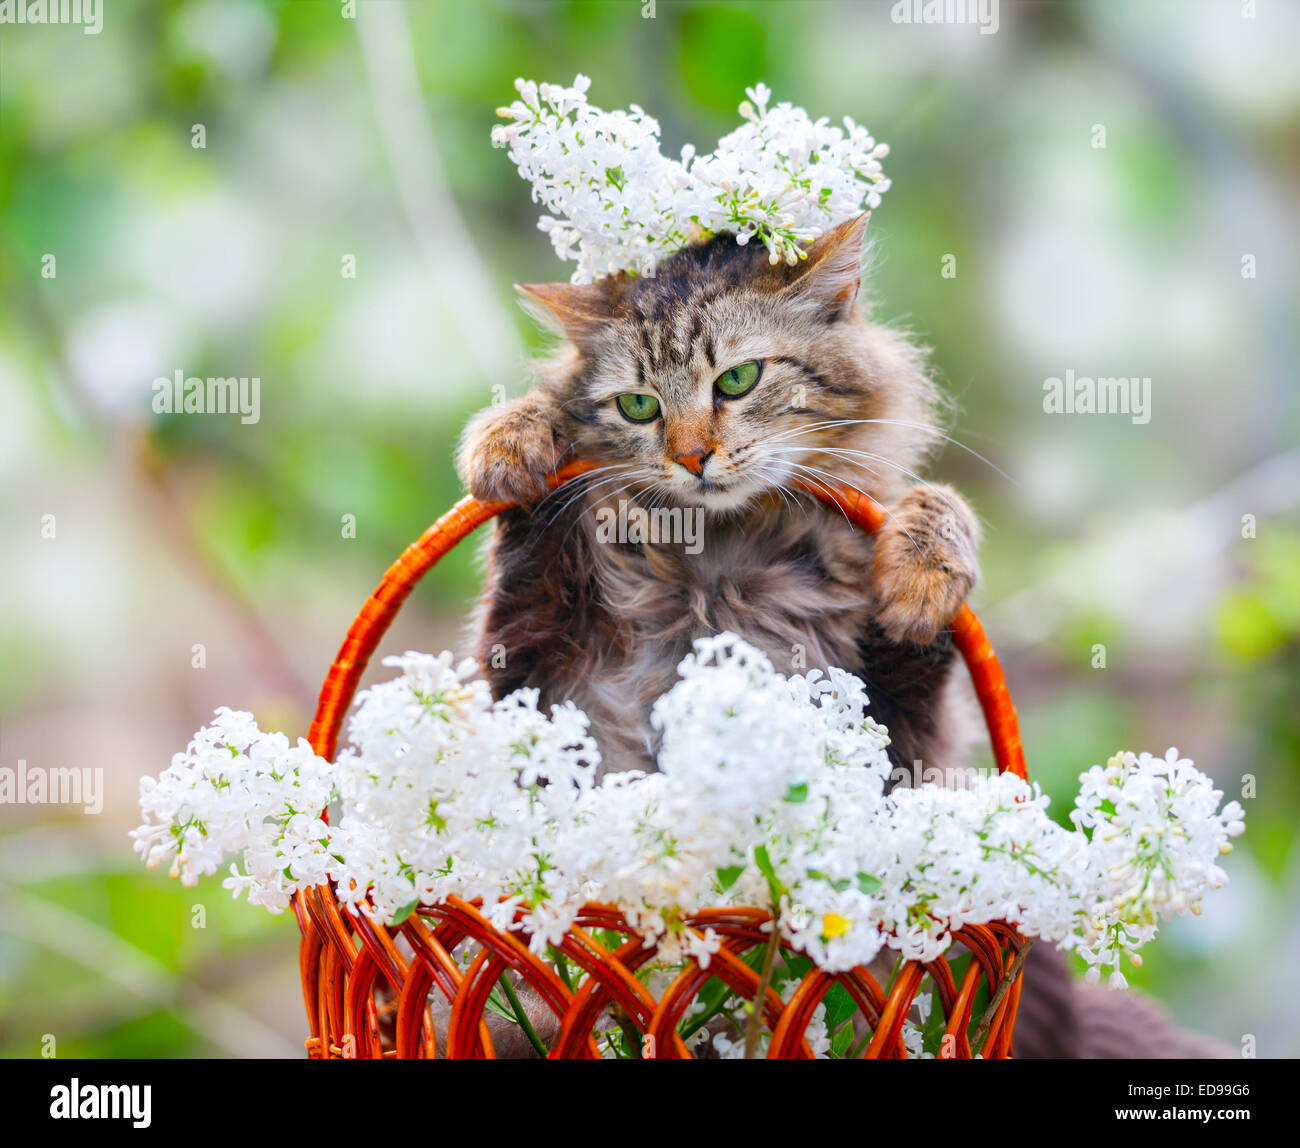 Cute cat in un cestello con bianco fiori lilla Foto Stock